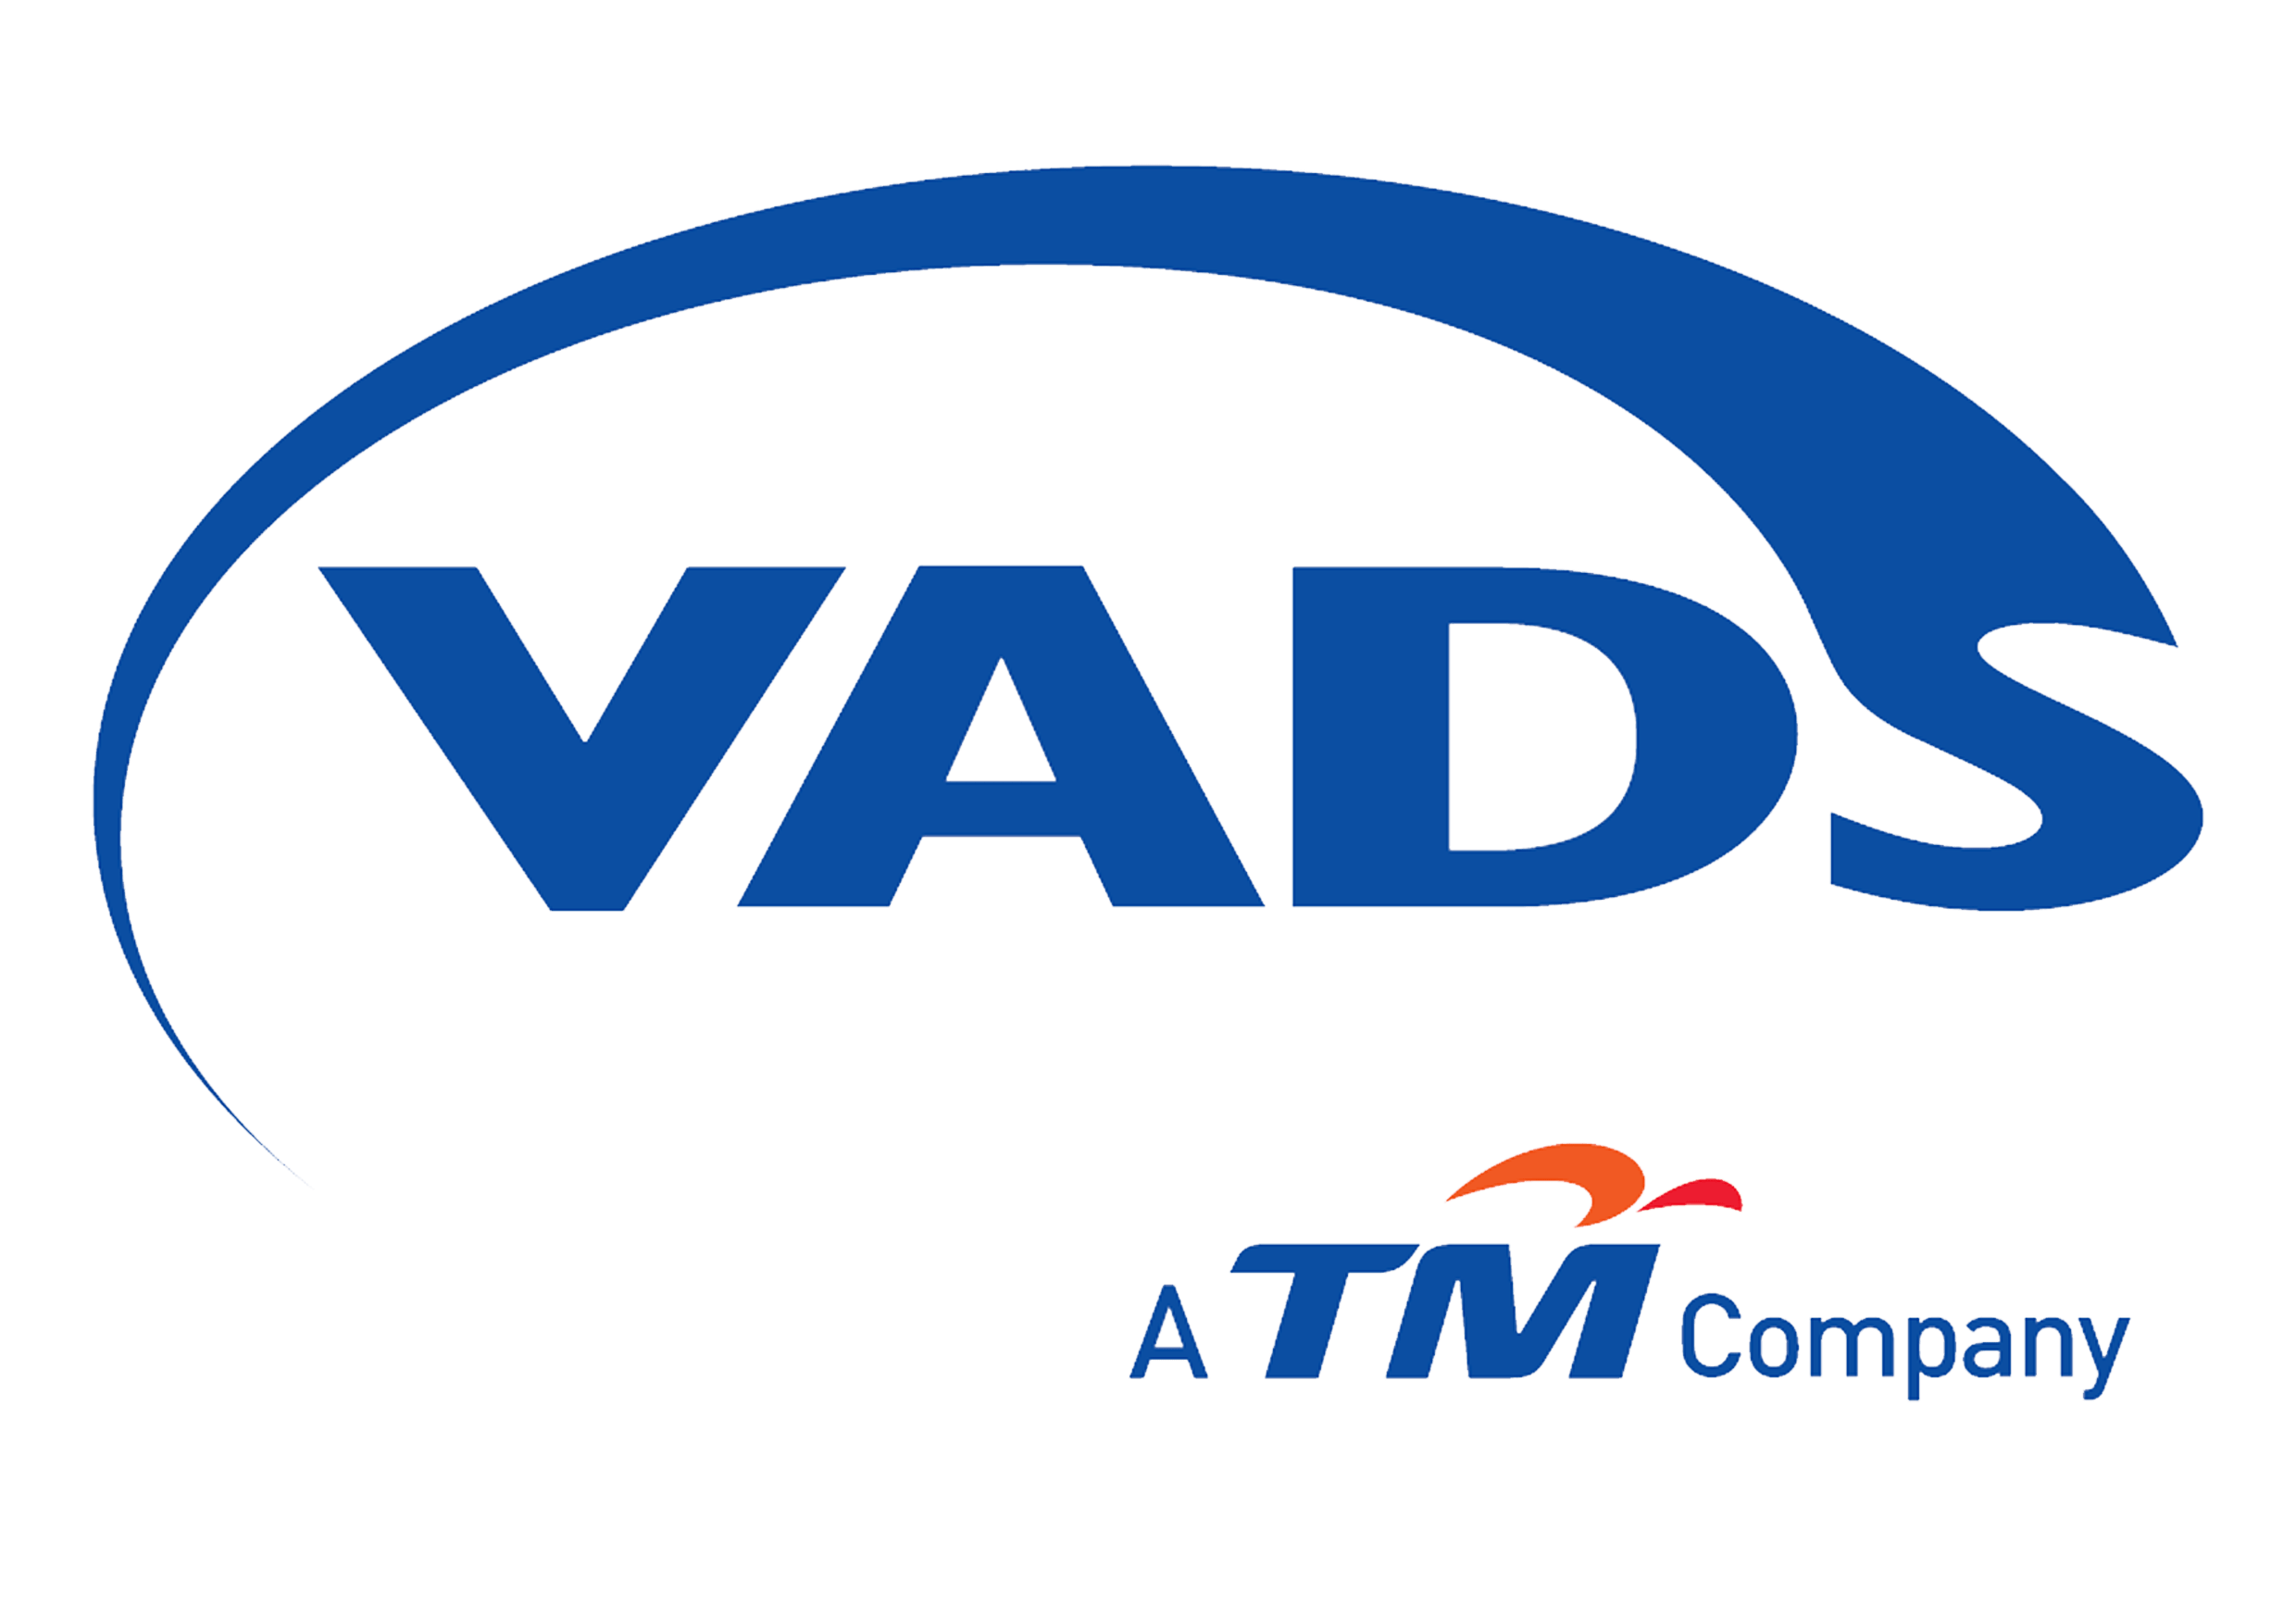 PT VADS logo